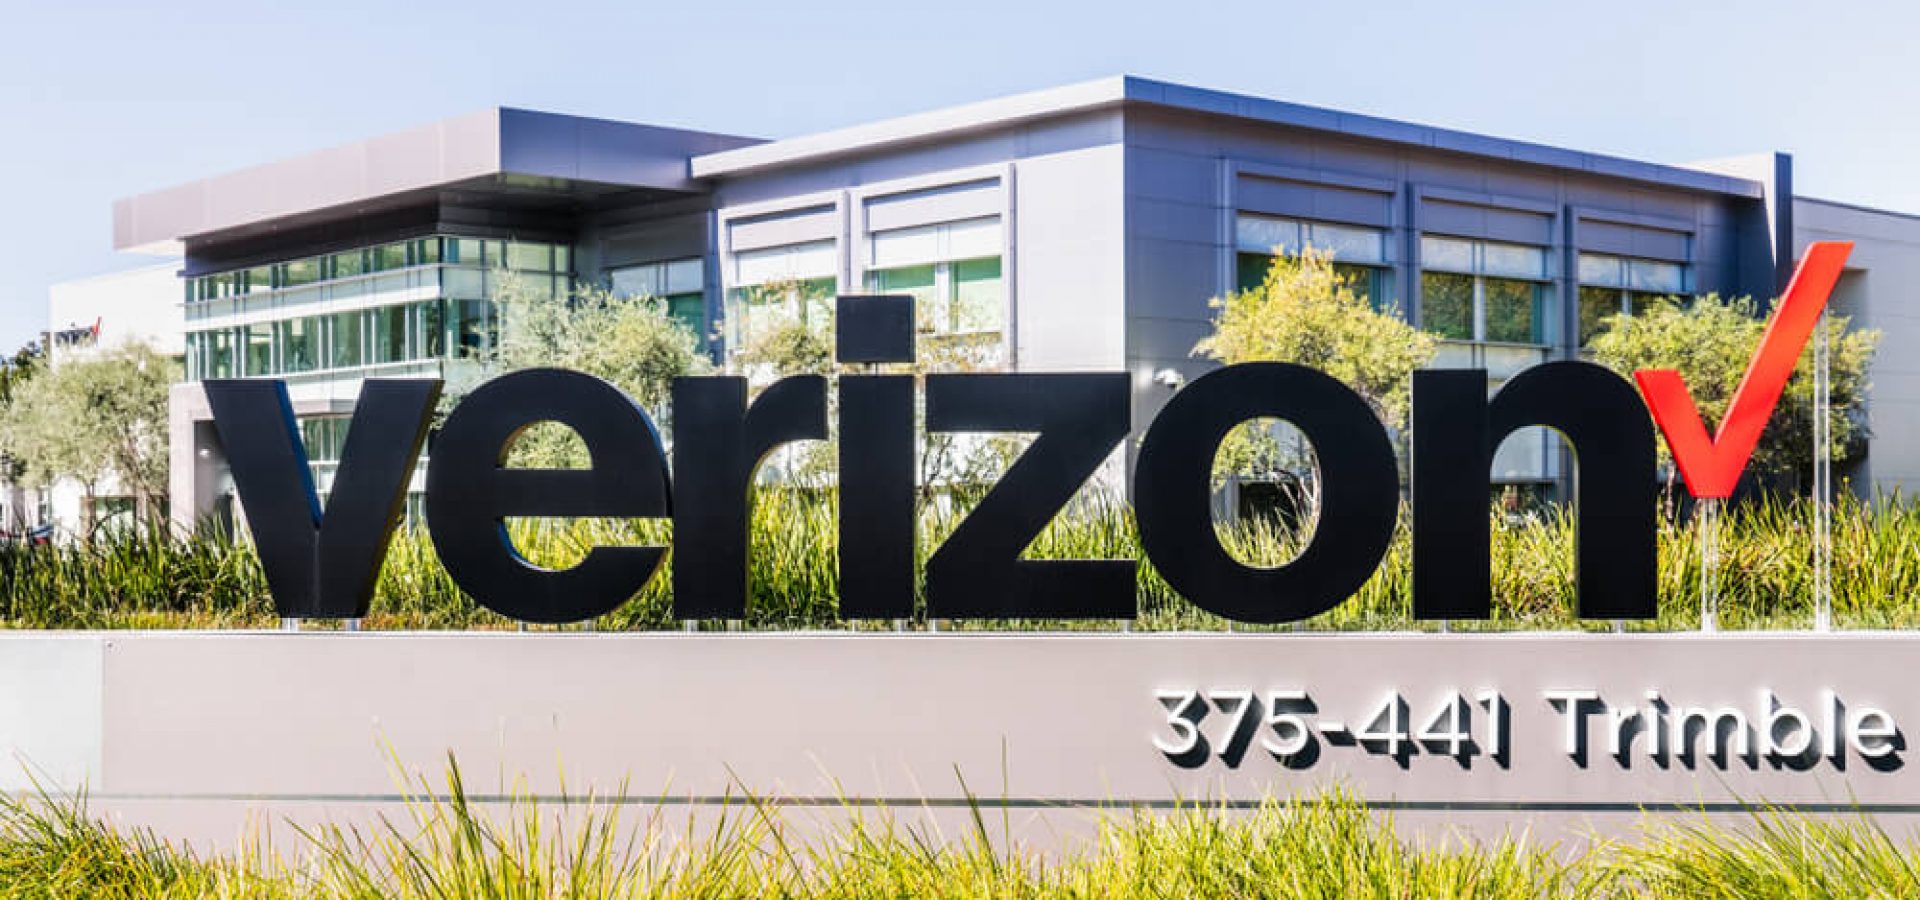 Verizon headquarters